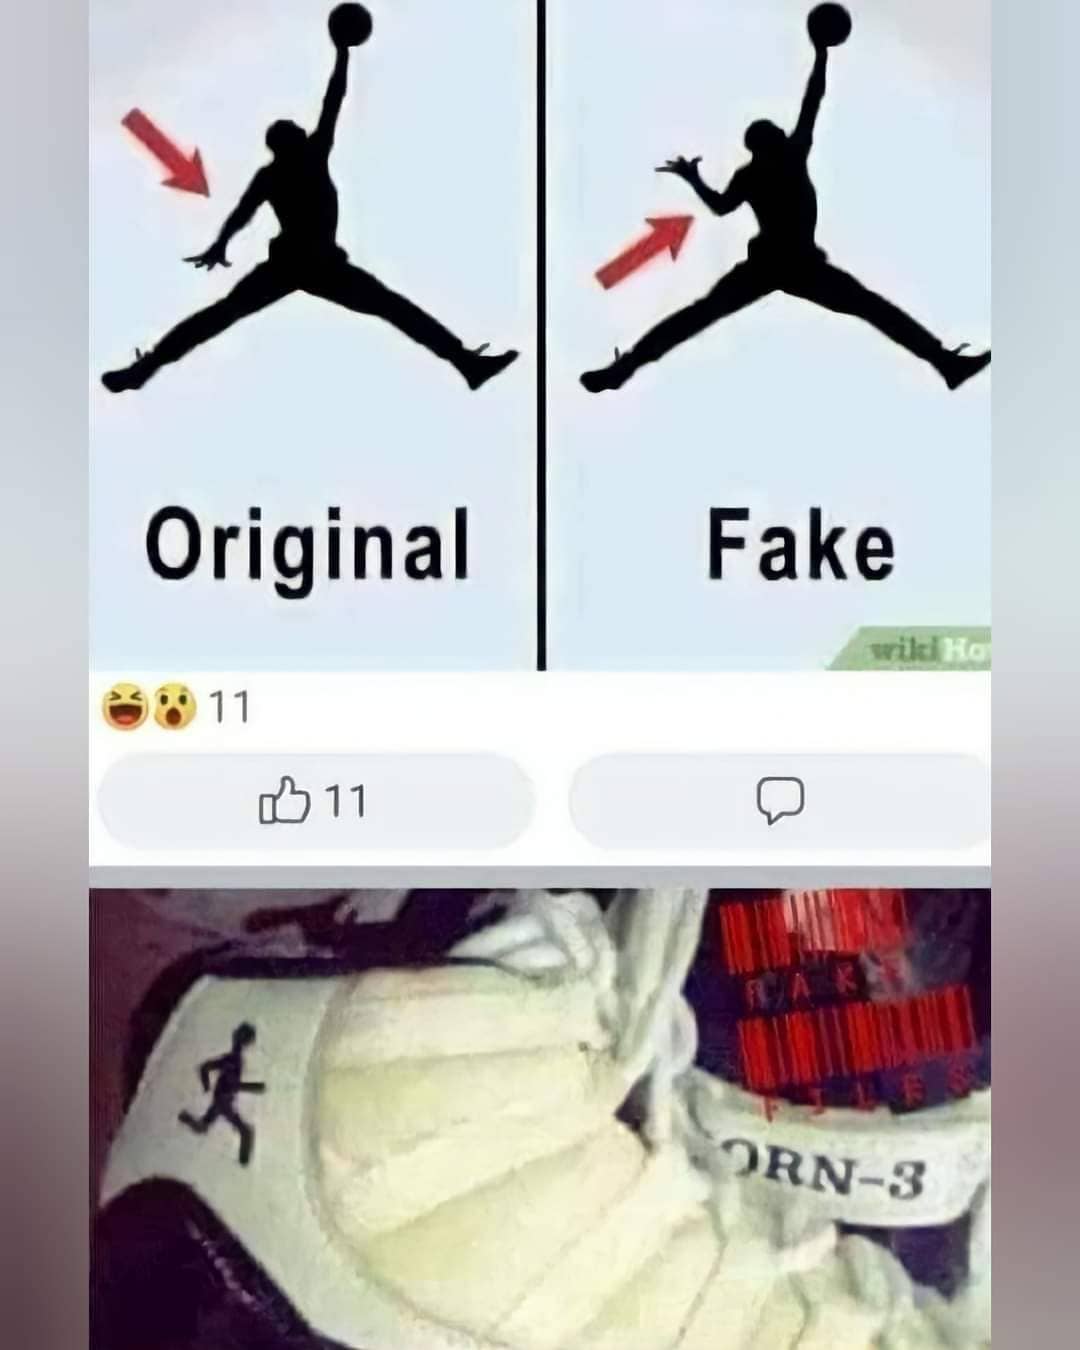 Original. Fake.